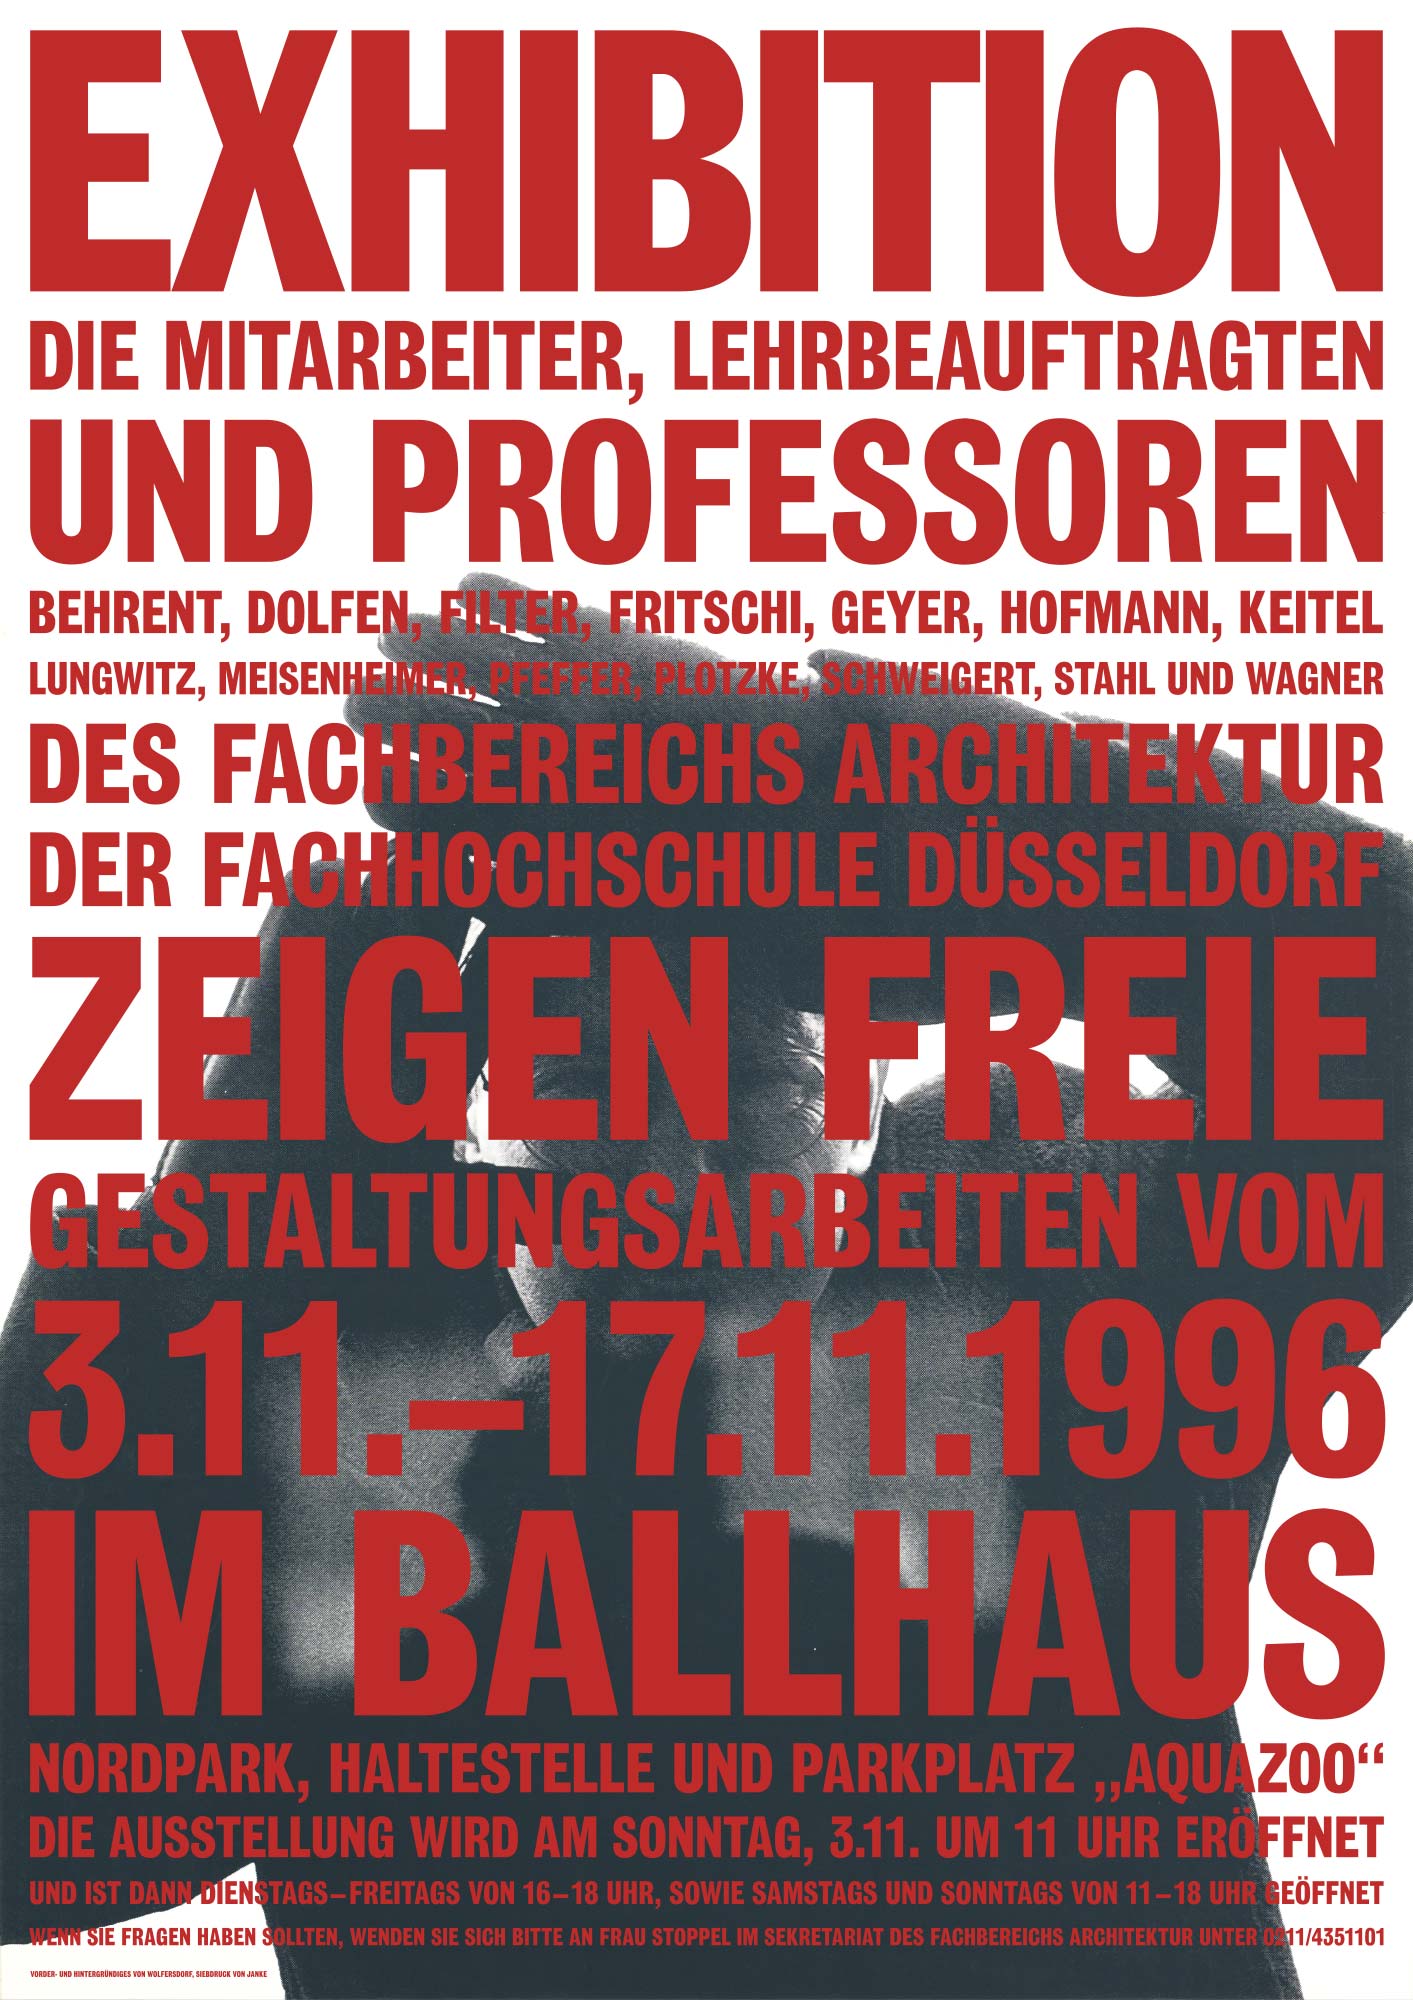 Gestaltet: Dirk Wolfersdorf, Titel: Exhibition im Ballhaus, Jahr: 1996